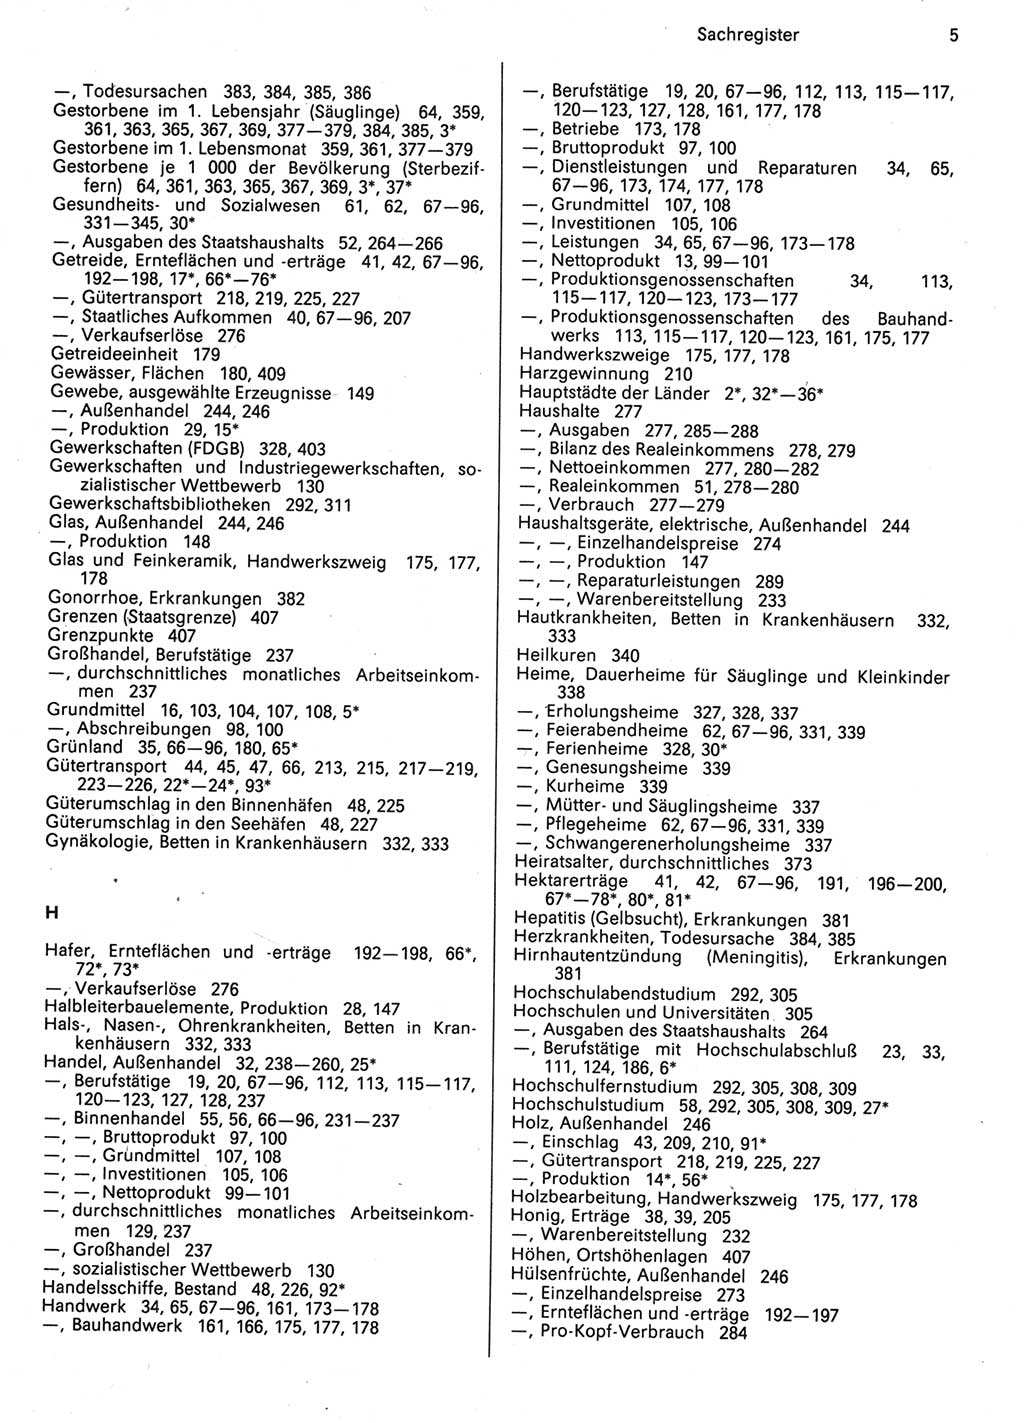 Statistisches Jahrbuch der Deutschen Demokratischen Republik (DDR) 1987, Seite 5 (Stat. Jb. DDR 1987, S. 5)